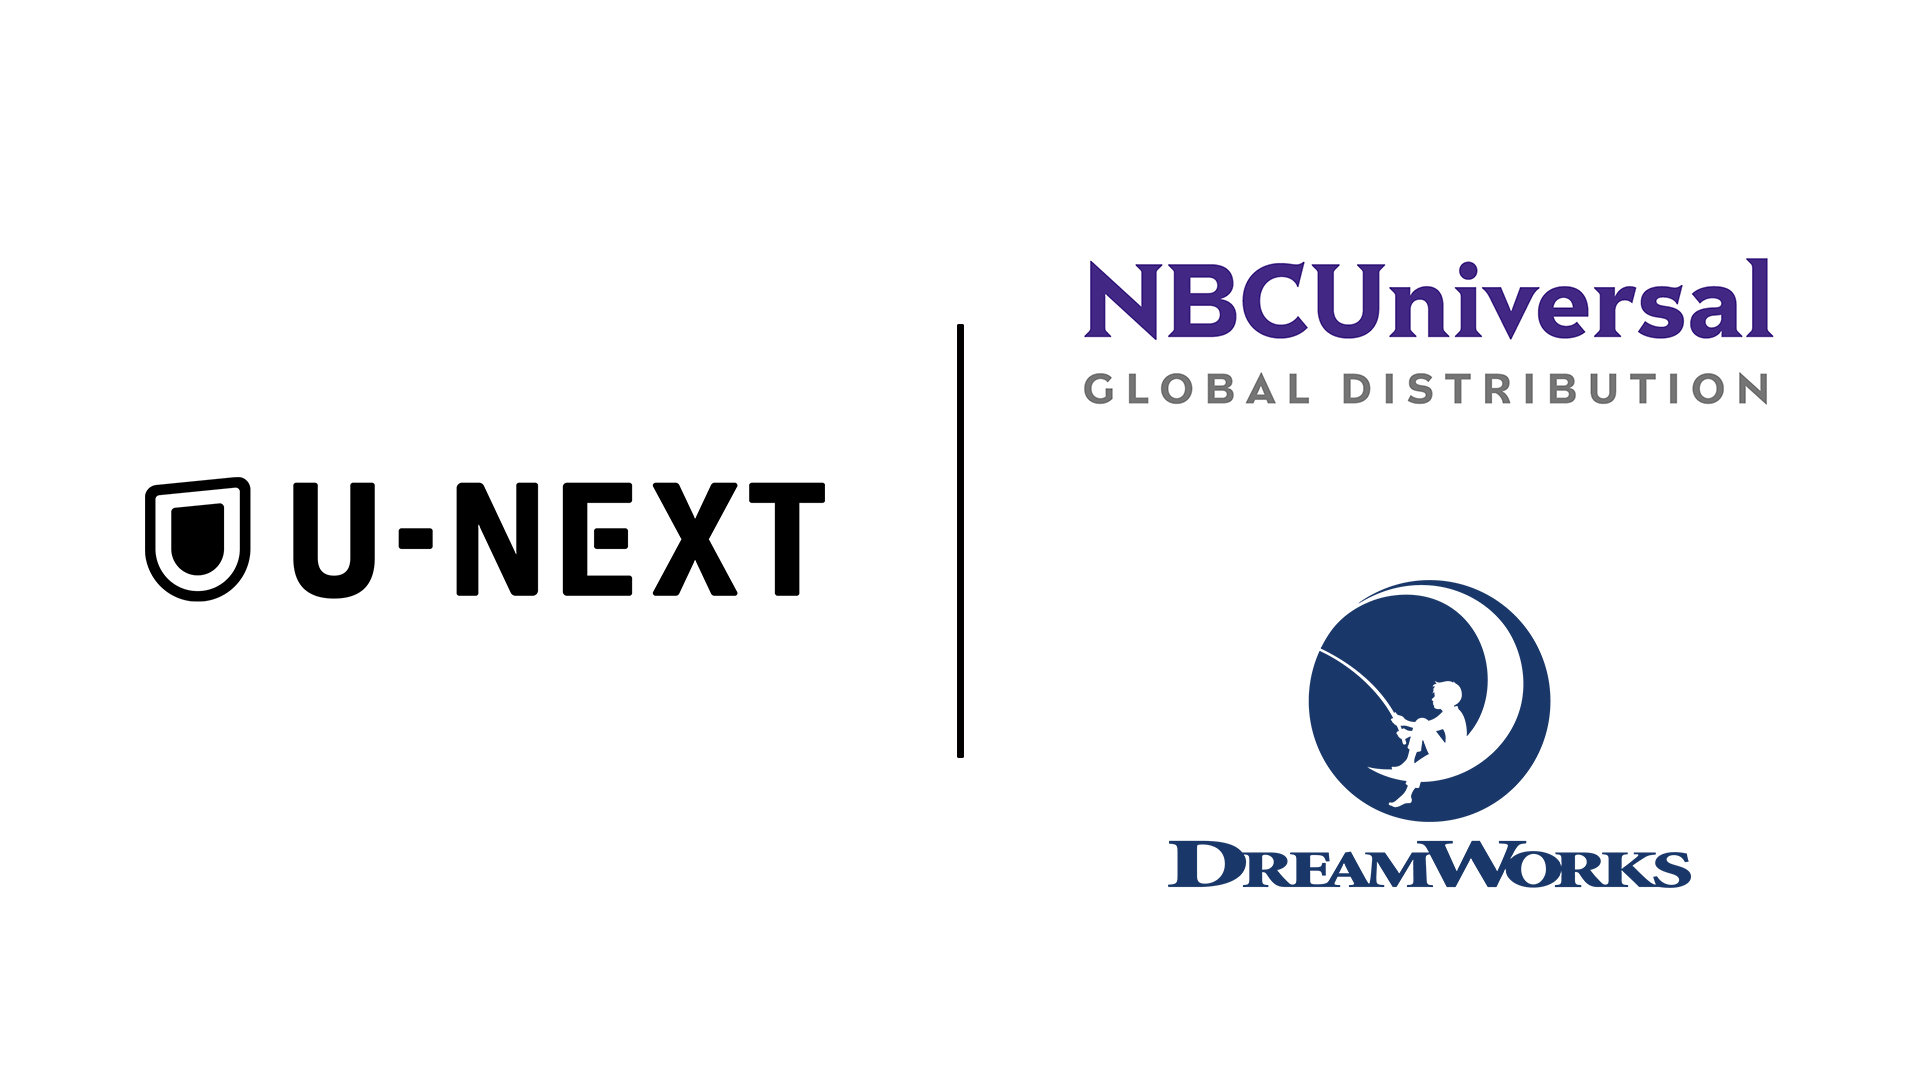 【U-NEXT】NBCユニバーサルとのパートナーシップ契約を強化、ドリームワークス・アニメーション作品を含むコンテンツが多数配信